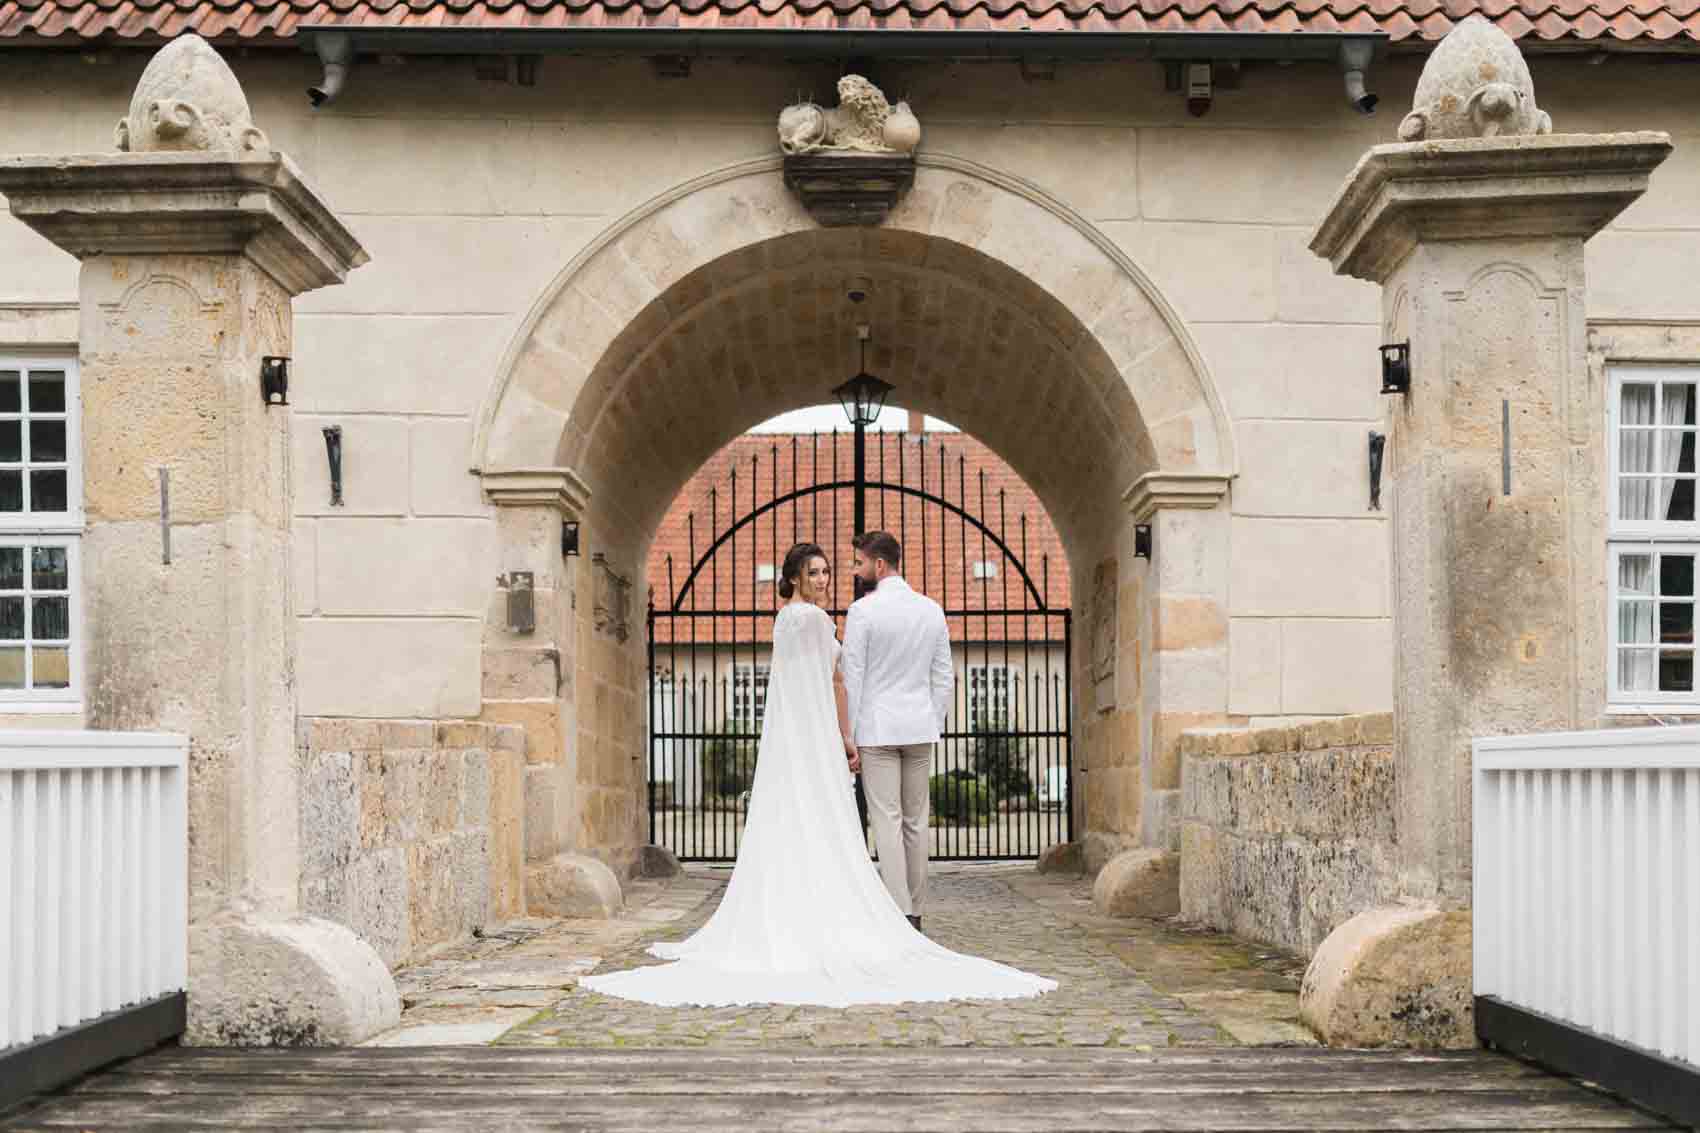 Hochzeitsfoto von Braut mit Cape und Brautkleid mit Schleppe und Bräutigam im weißen Anzug. Das Hochzeitspaar steht vor dem Wasserschloss Haus Marck in Tecklenburg auf der Brücke mit dem Rücken zum Betrachter